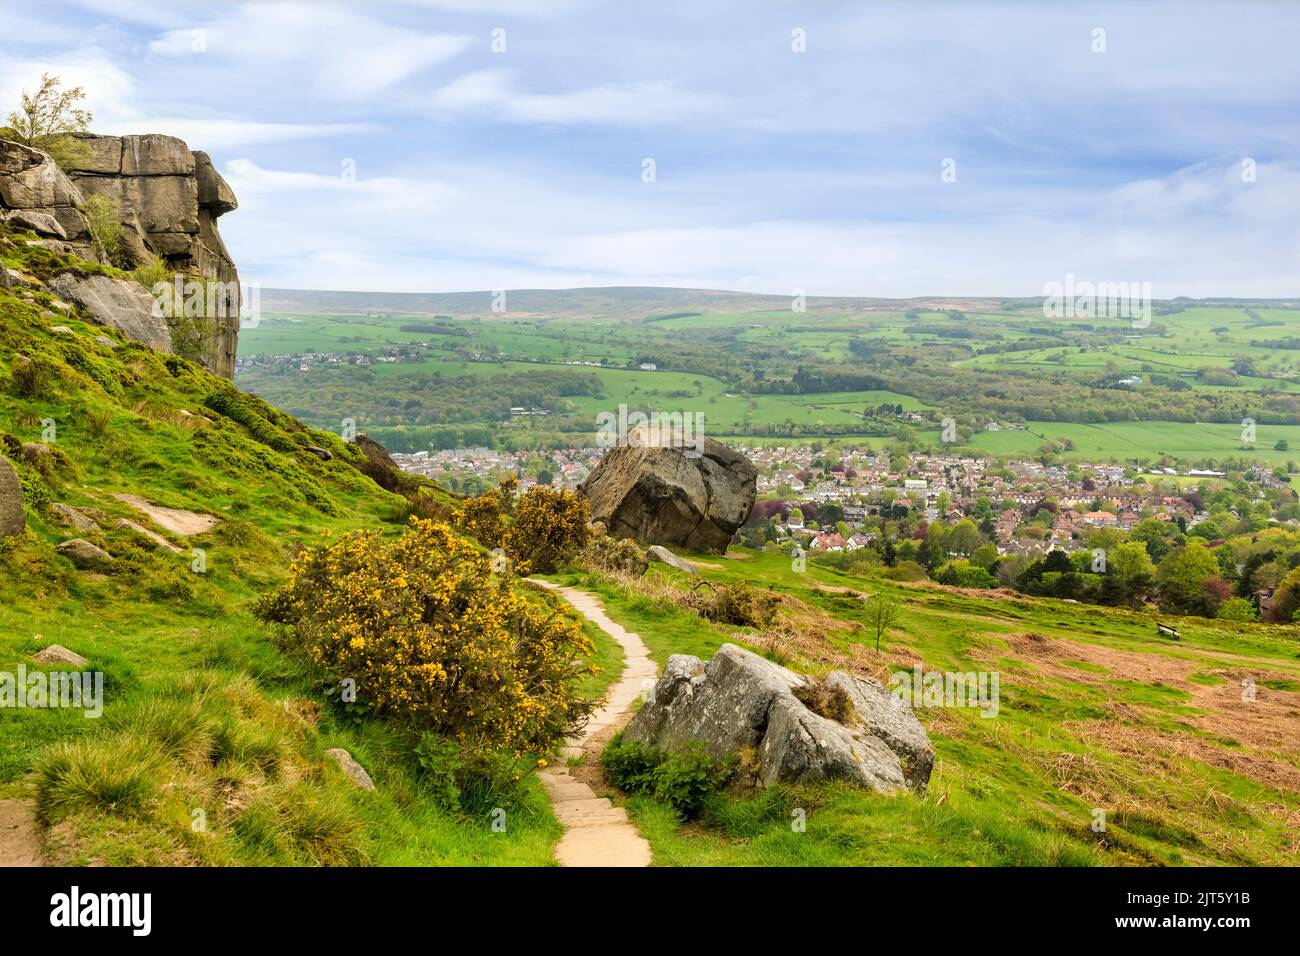 Ilkley Moor, mit den Cow- und Calf-Felsen, einem Fußweg, Ginster und einem Blick über die West Yorkshire-Mühlenstadt Ilkley. Stockfoto